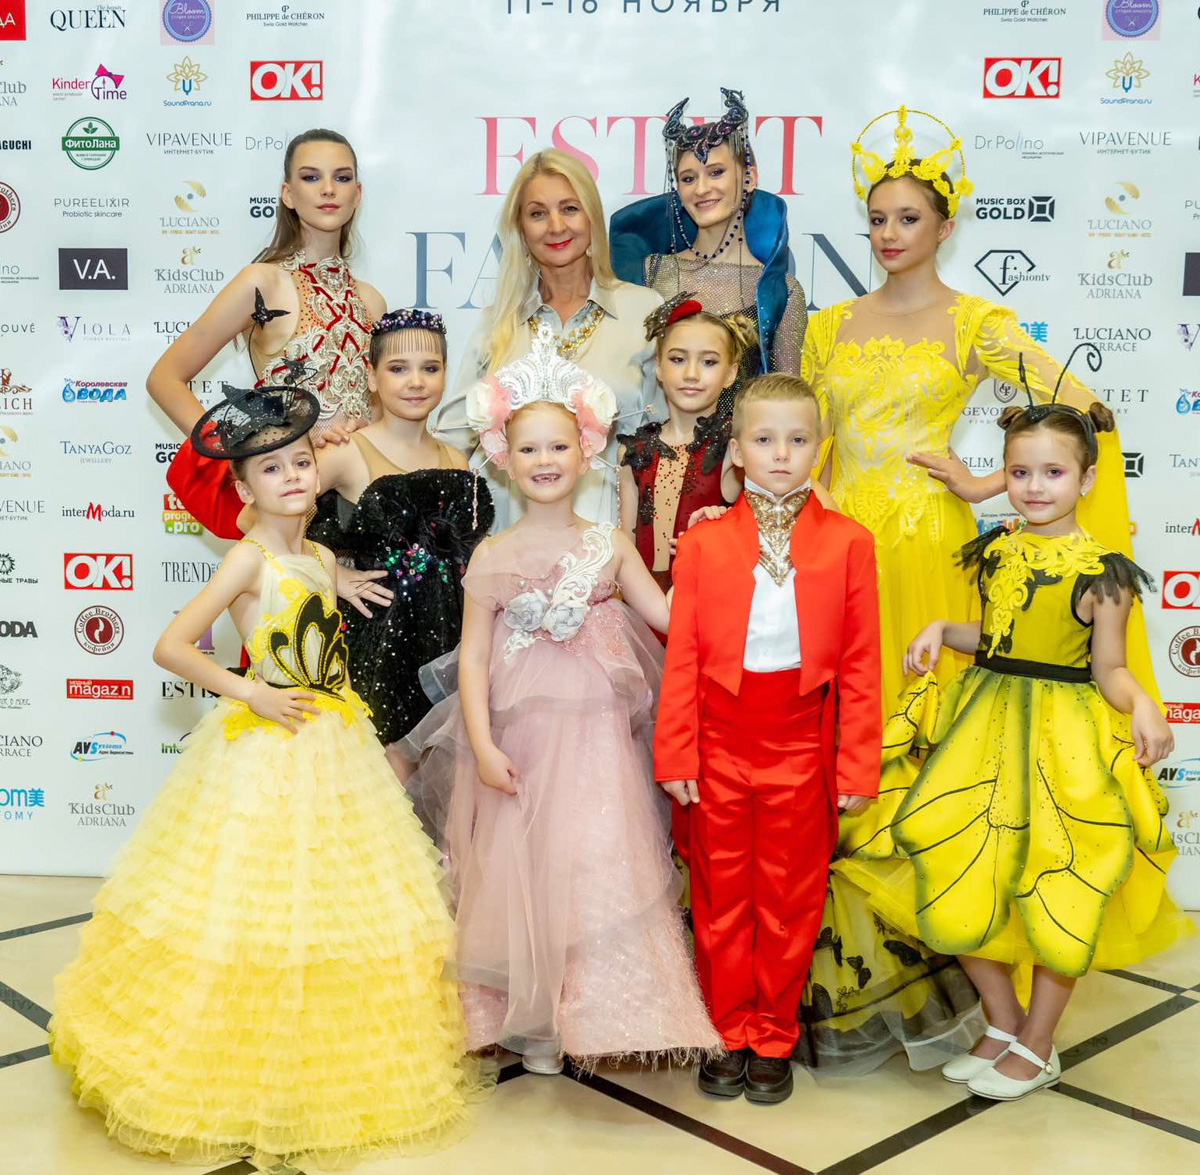 В это воскресенье во Владимире в ОДКиИ состоится светский раут, посвященный 25-летию модельного агентства «Жанна». И, естественно, в честь этого будет устроено настоящее фэшн-шоу с известными в мире красоты гостями и именитыми дизайнерами.